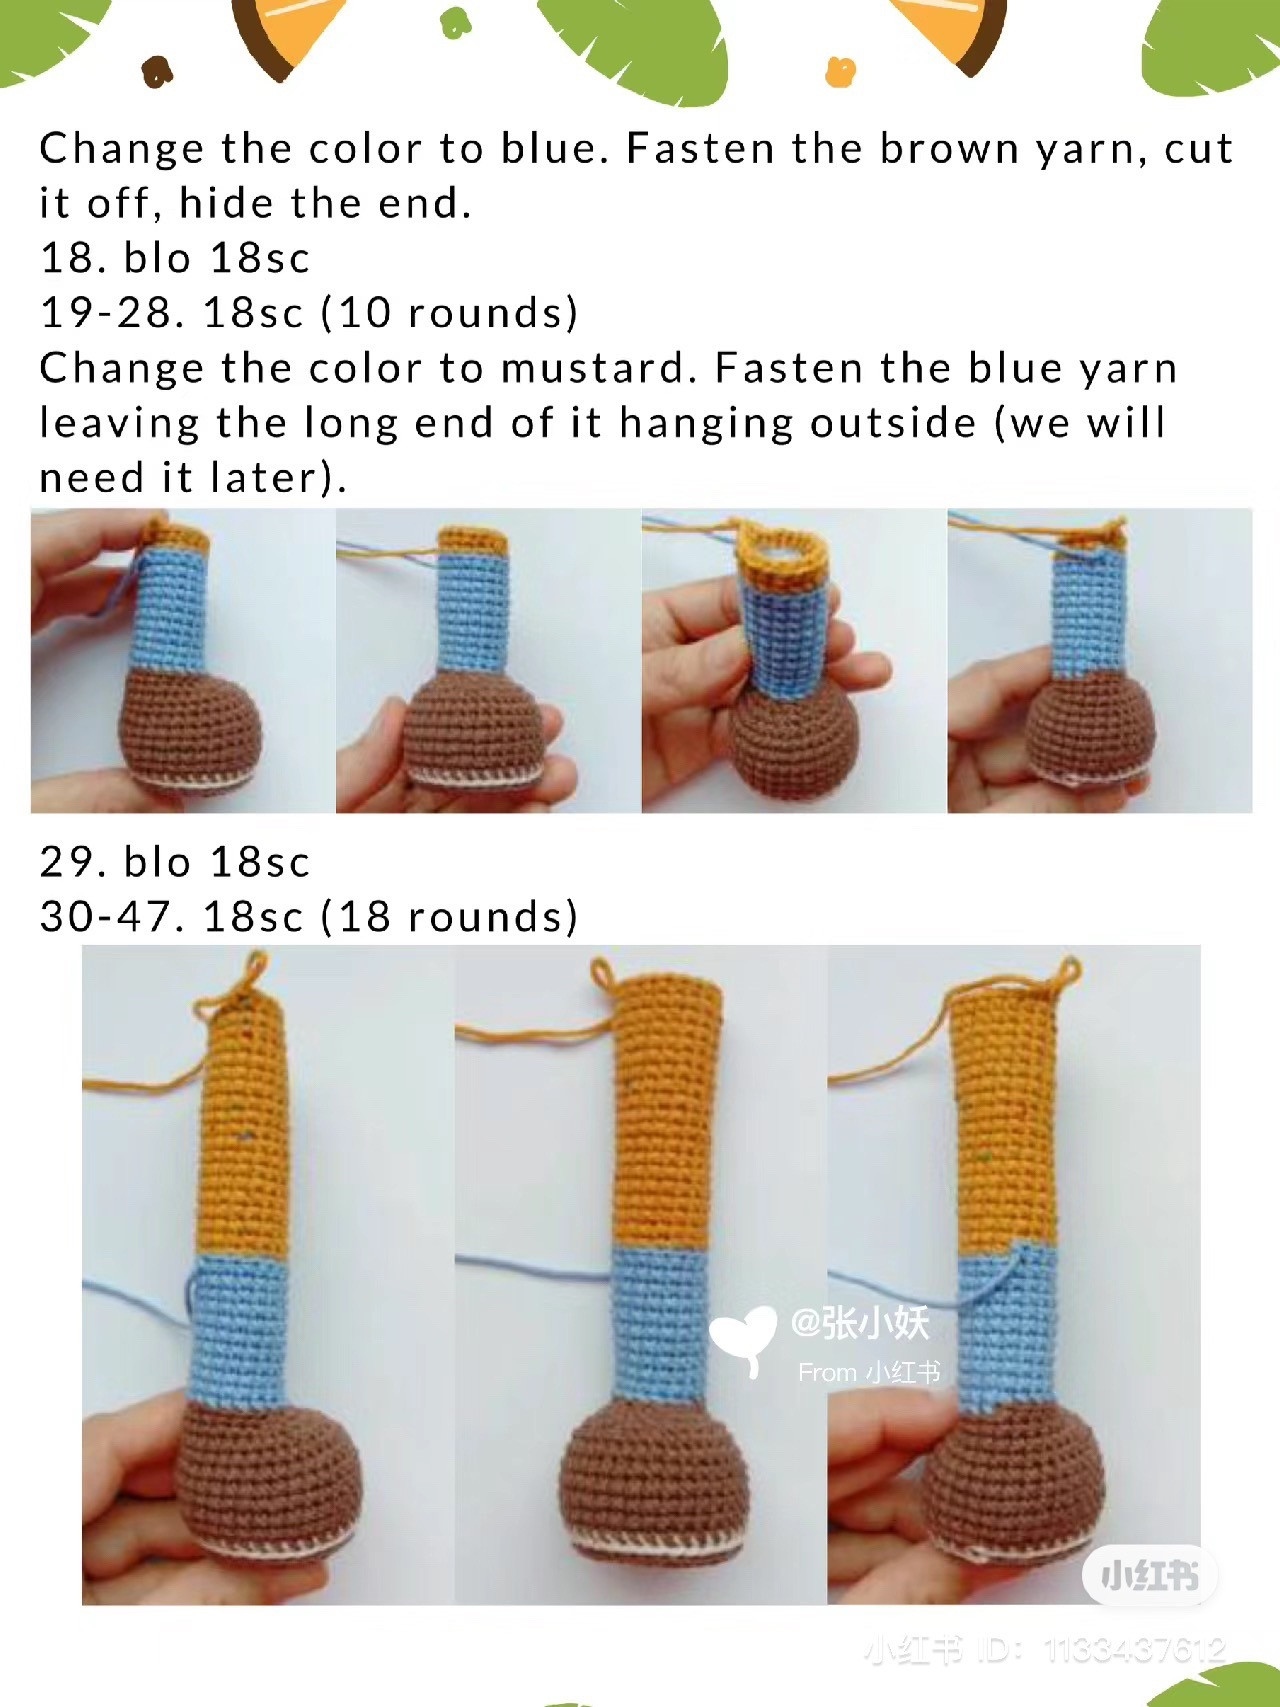 crochet giraffe chart with balloon